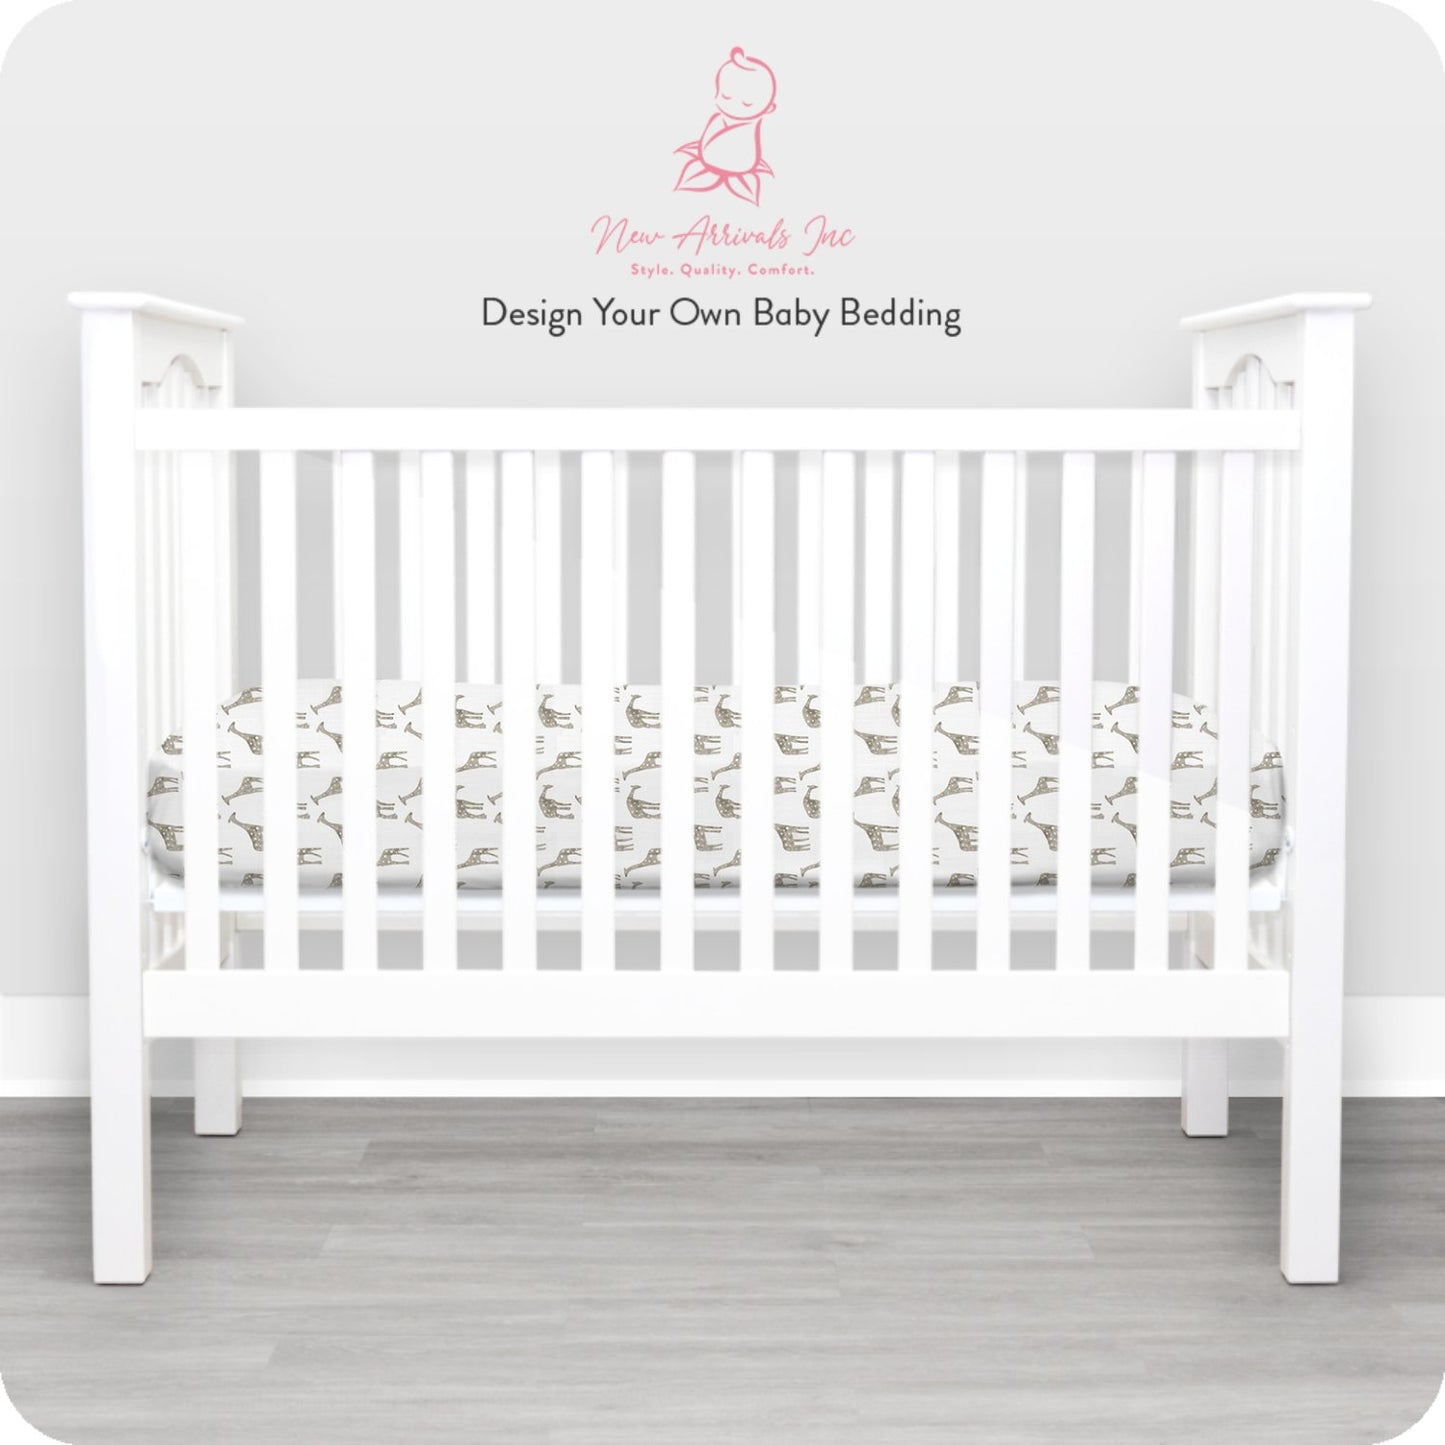 Design Your Own Baby Bedding - Crib Bedding - ID GxEPABlHwWxiurf6FeyWqYh_ - New Arrivals Inc